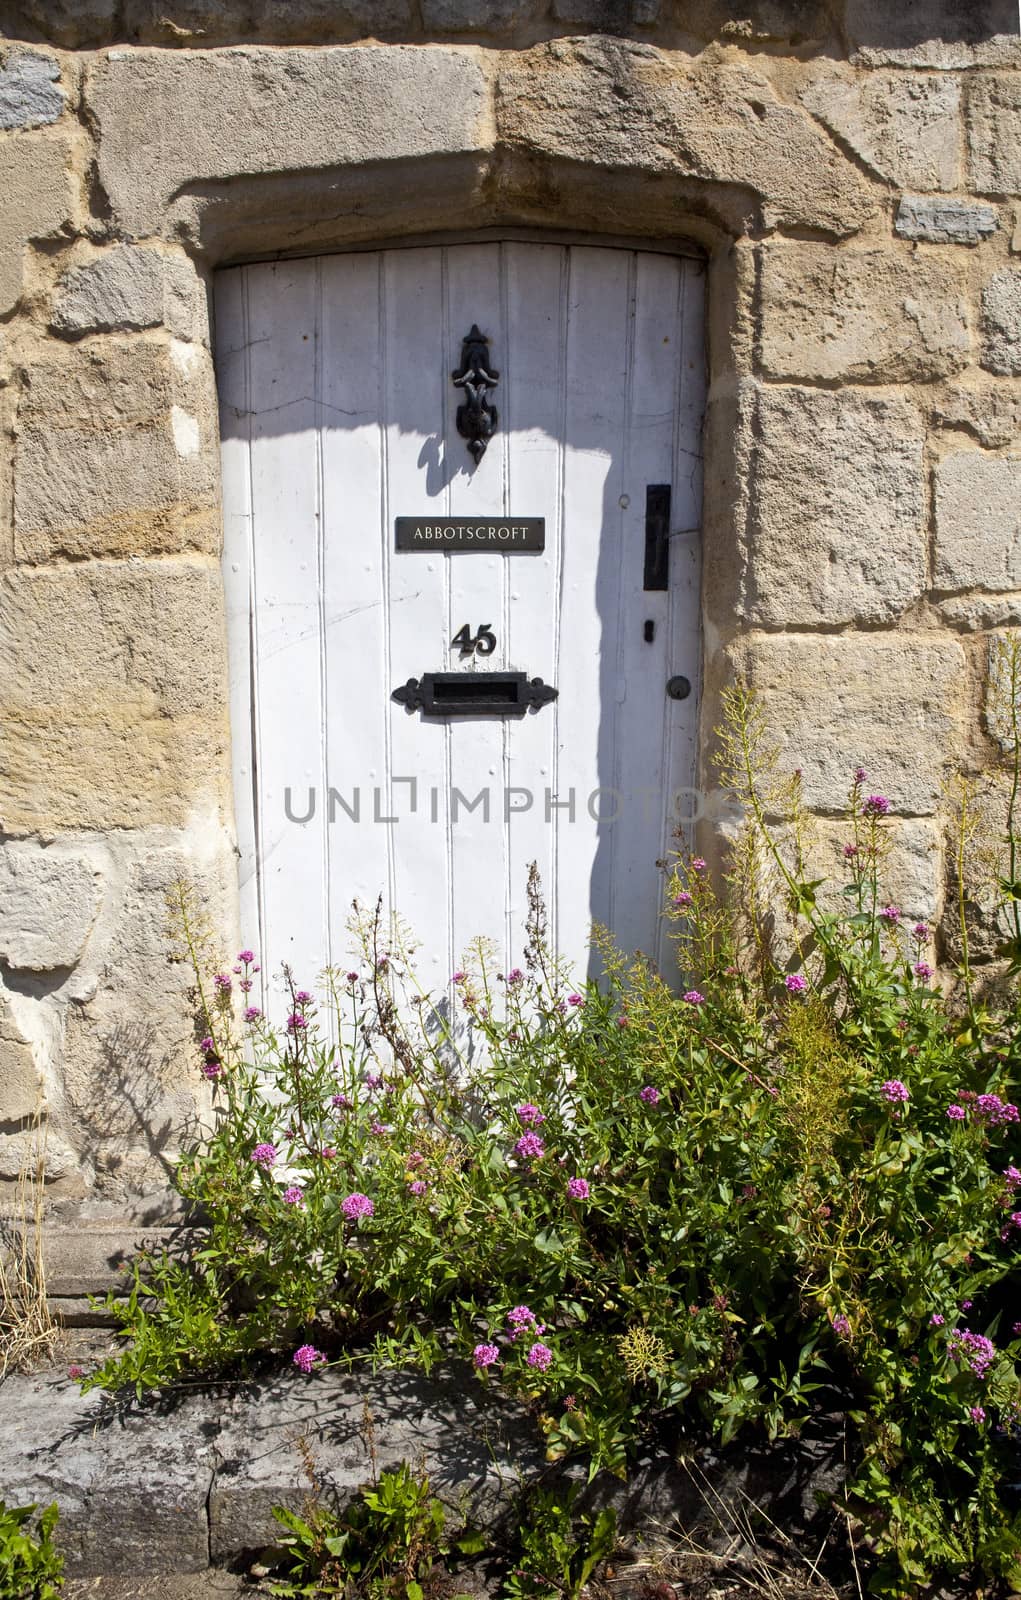 A quaint doorway in a rural British village.